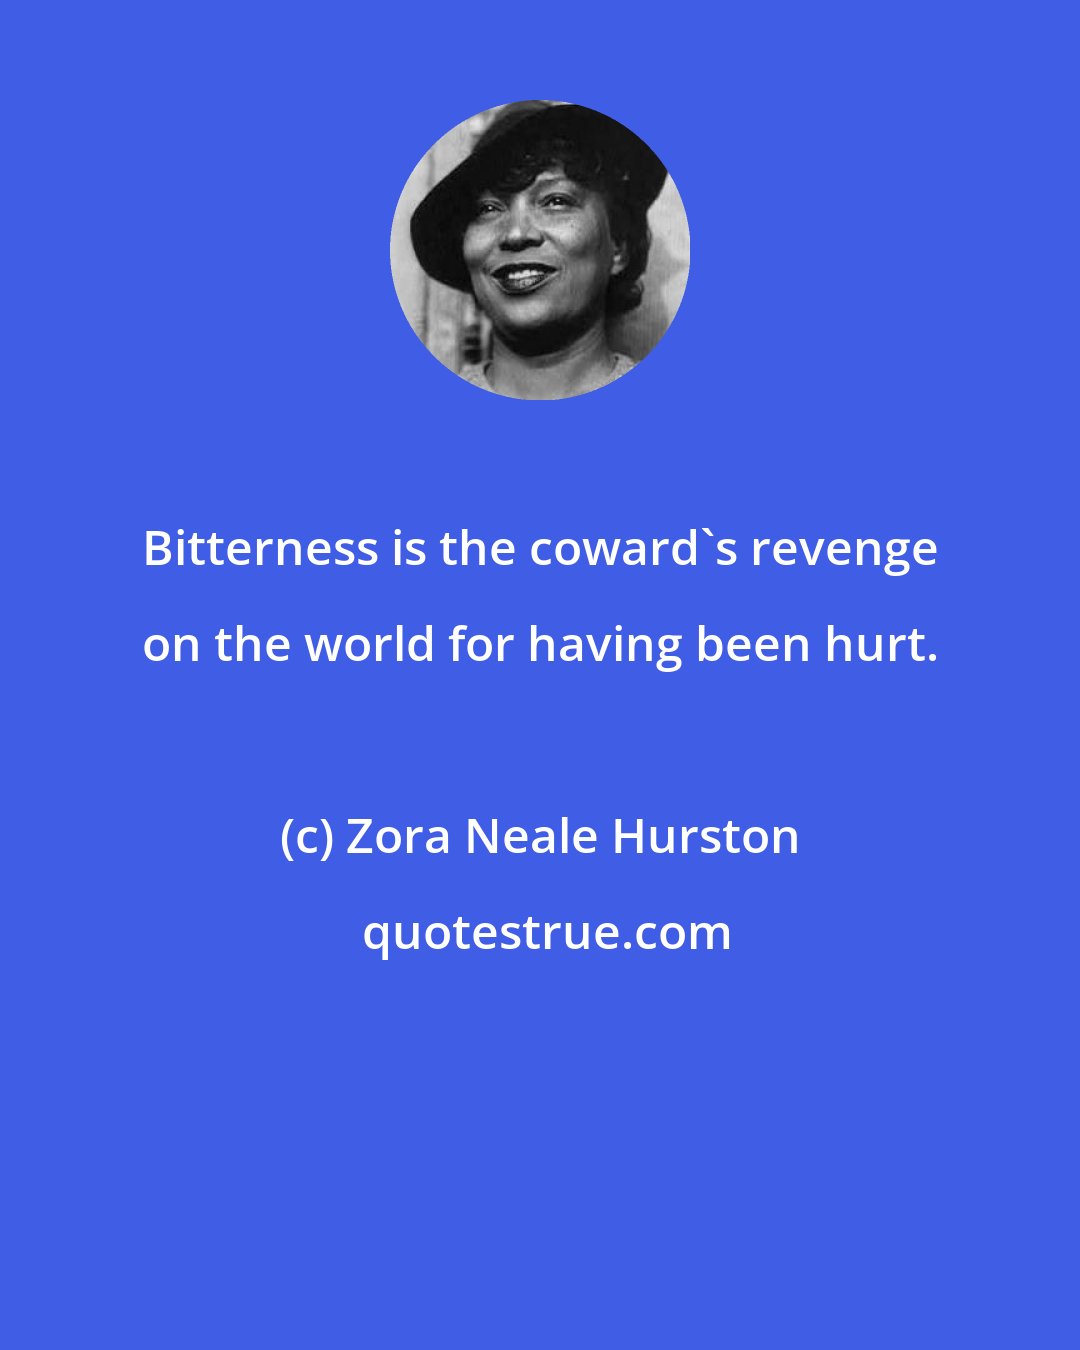 Zora Neale Hurston: Bitterness is the coward's revenge on the world for having been hurt.